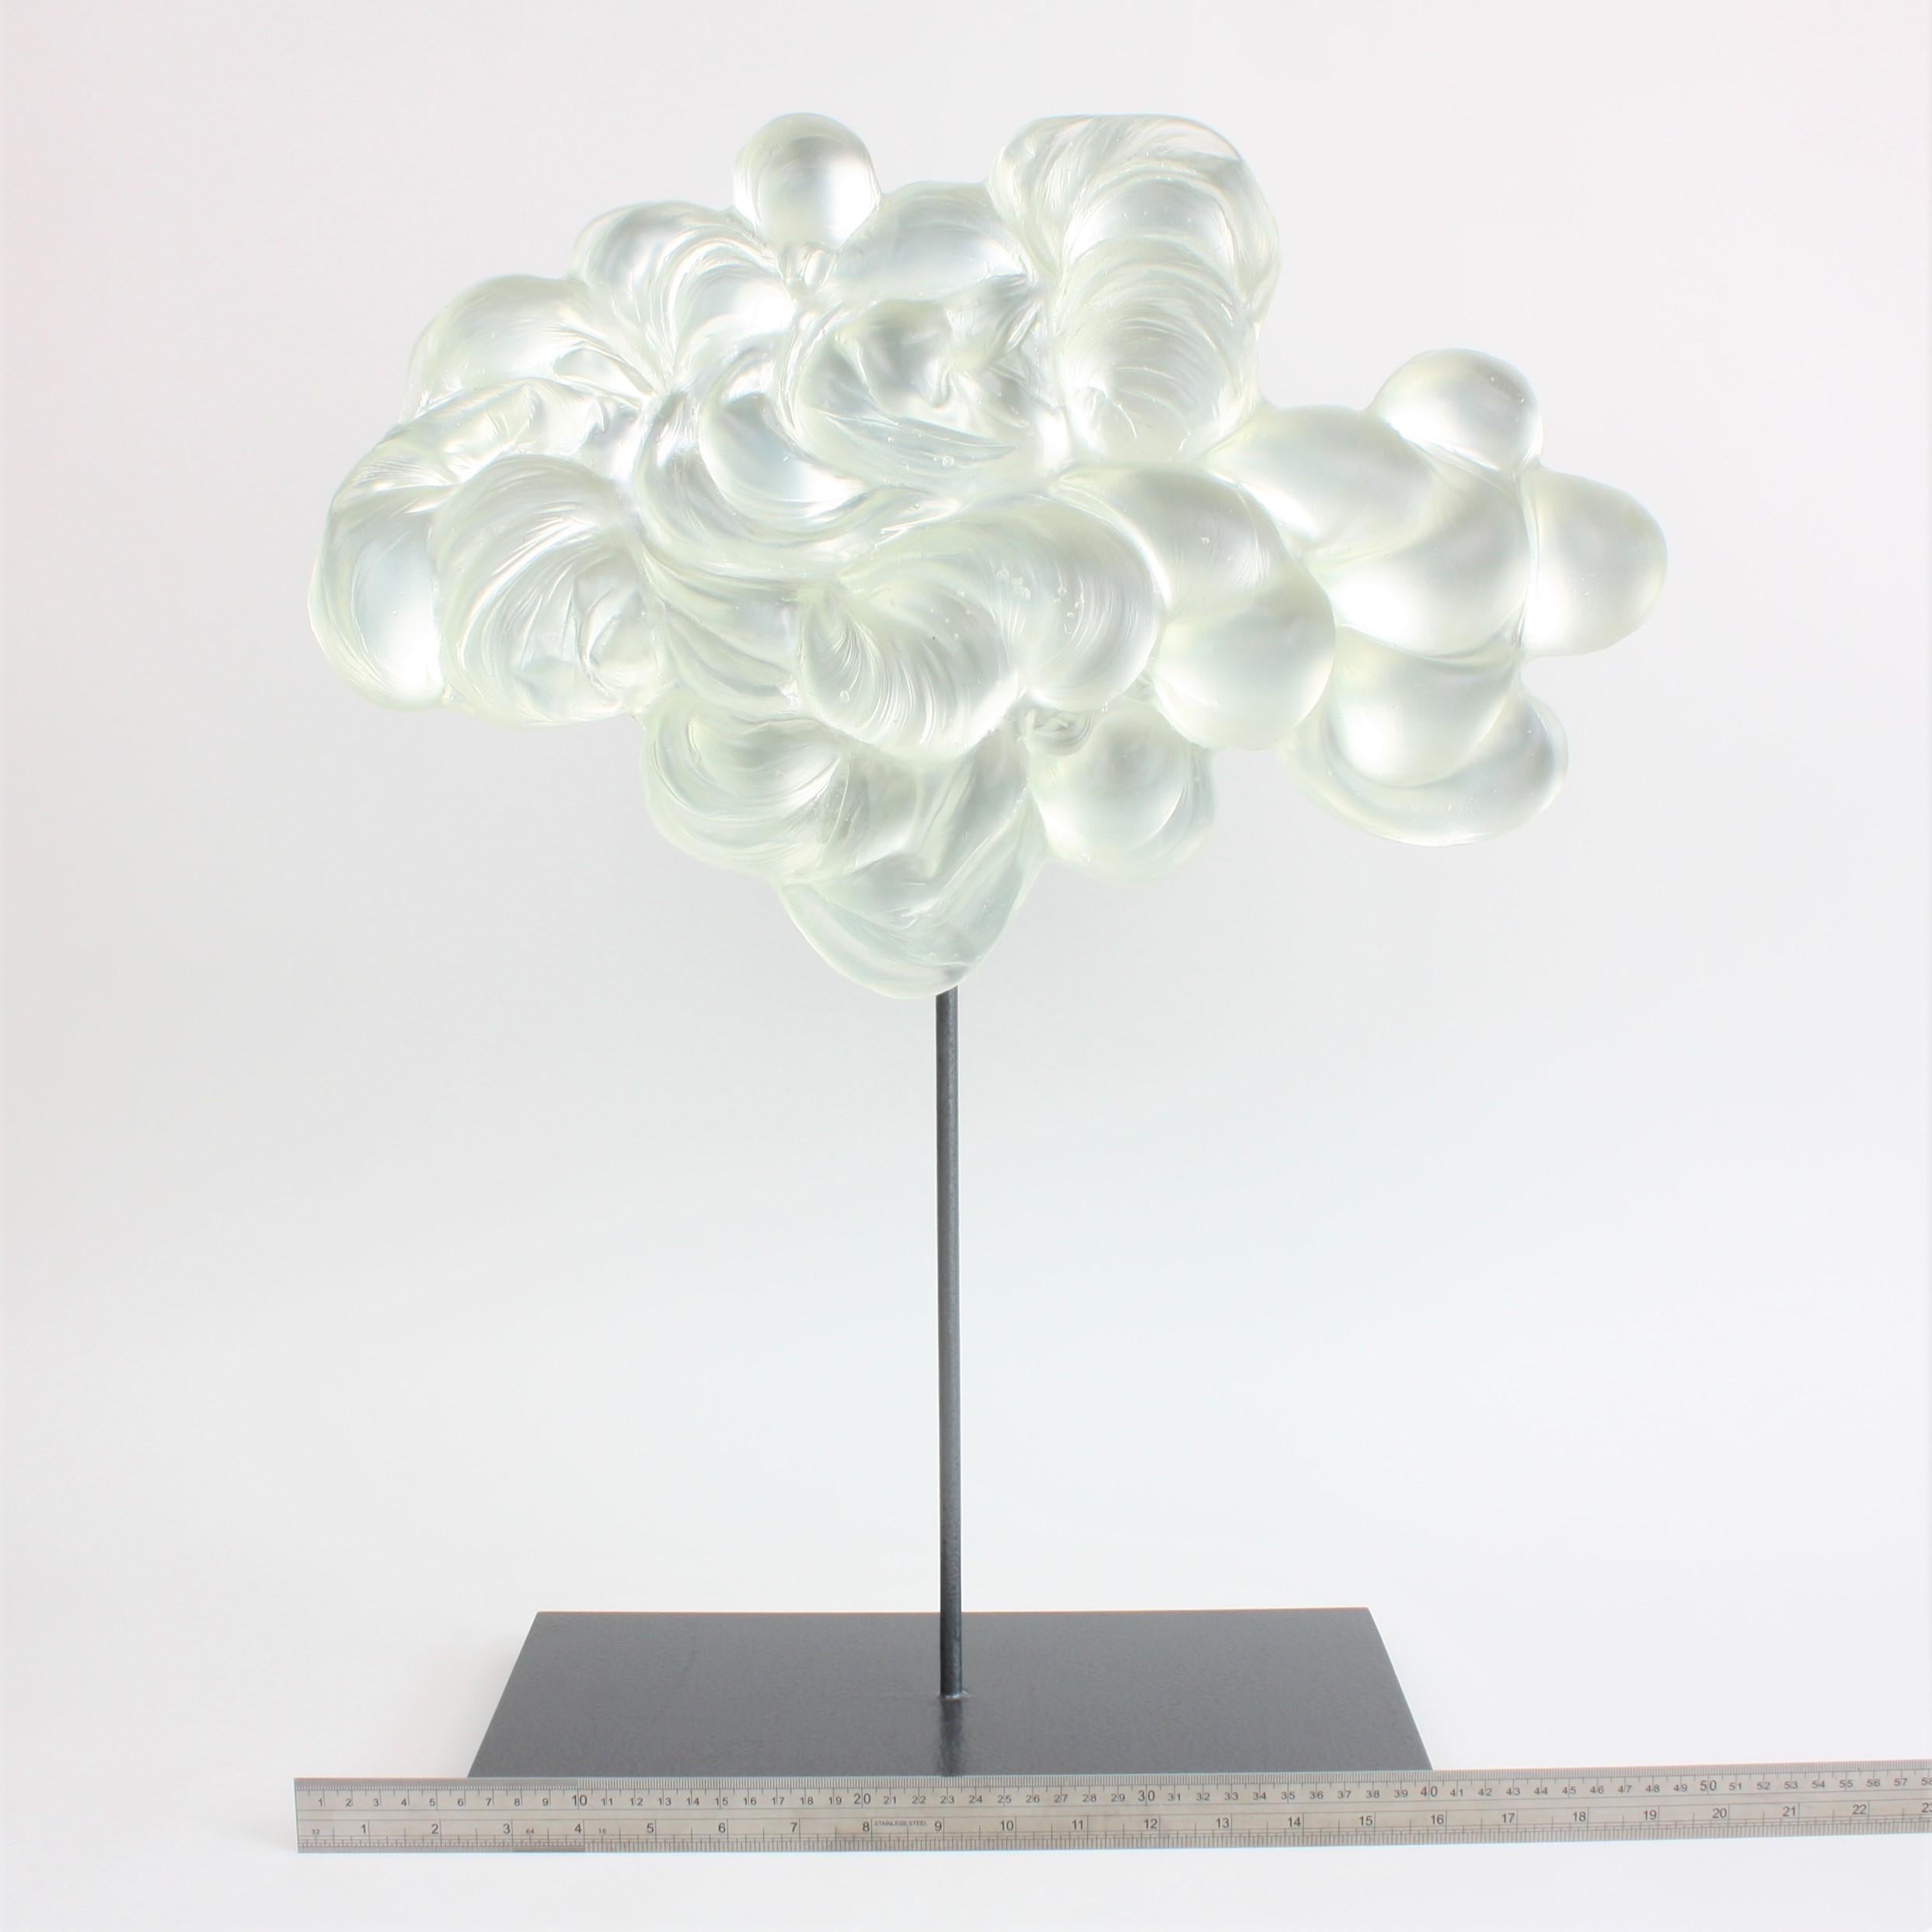 Contemporary Glass Cloud Sculpture, Nuage III 2